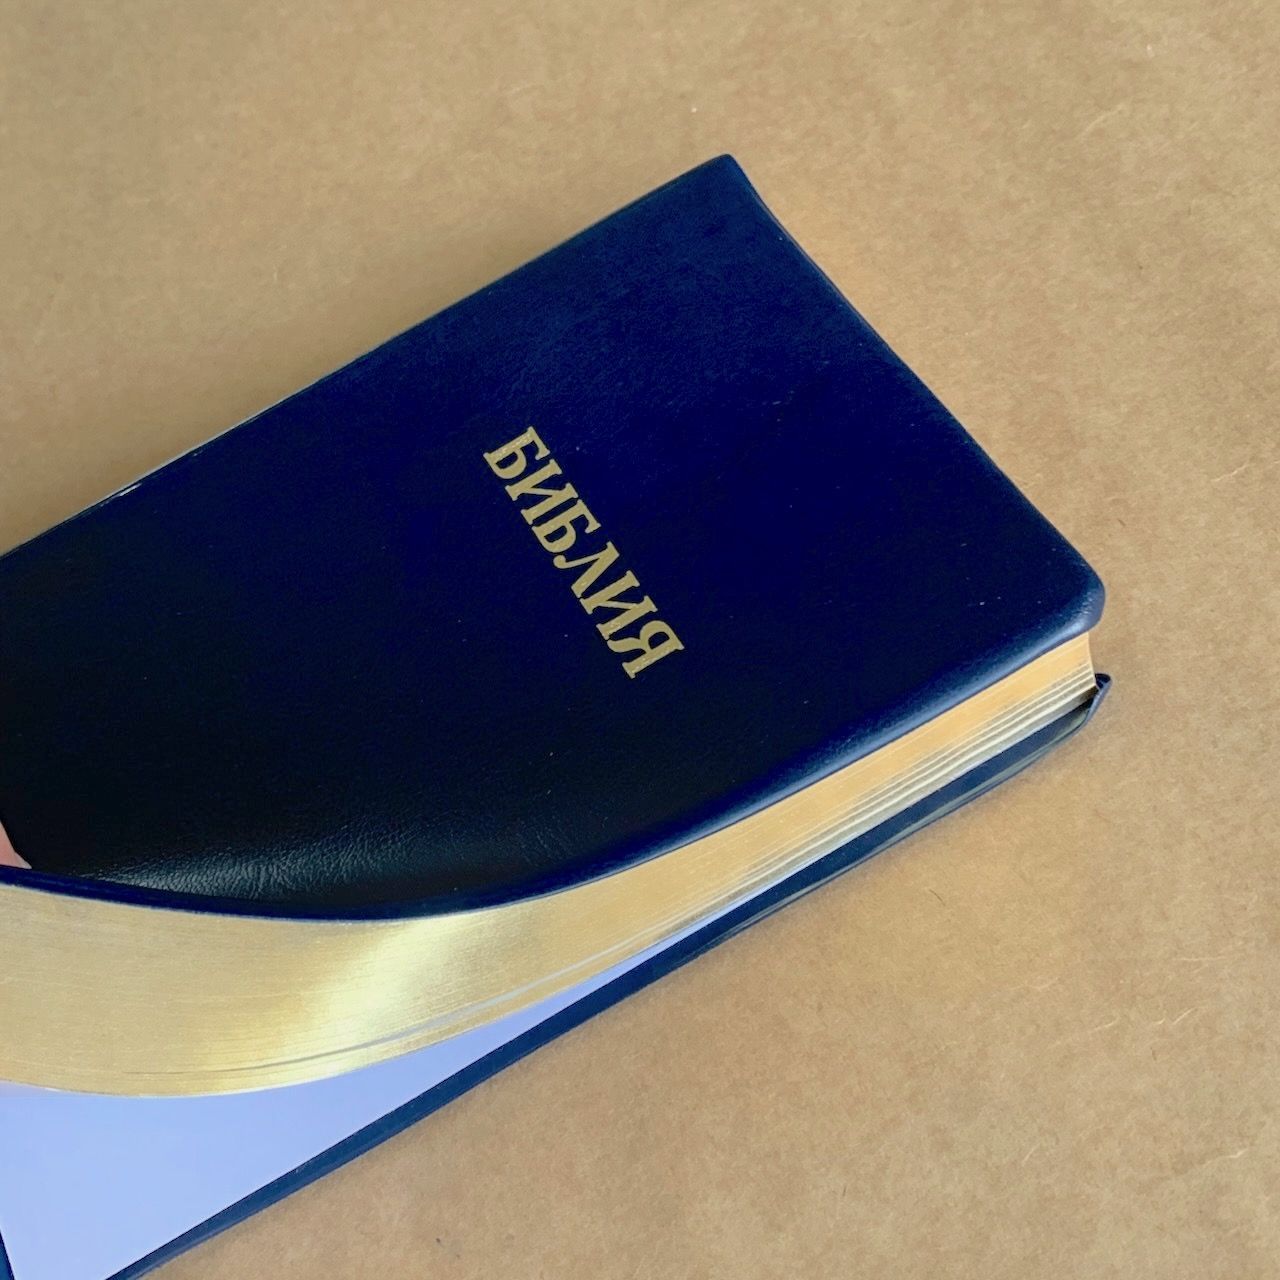 Библия — цвет темно-синий, переплет иск. кожи, без индексов